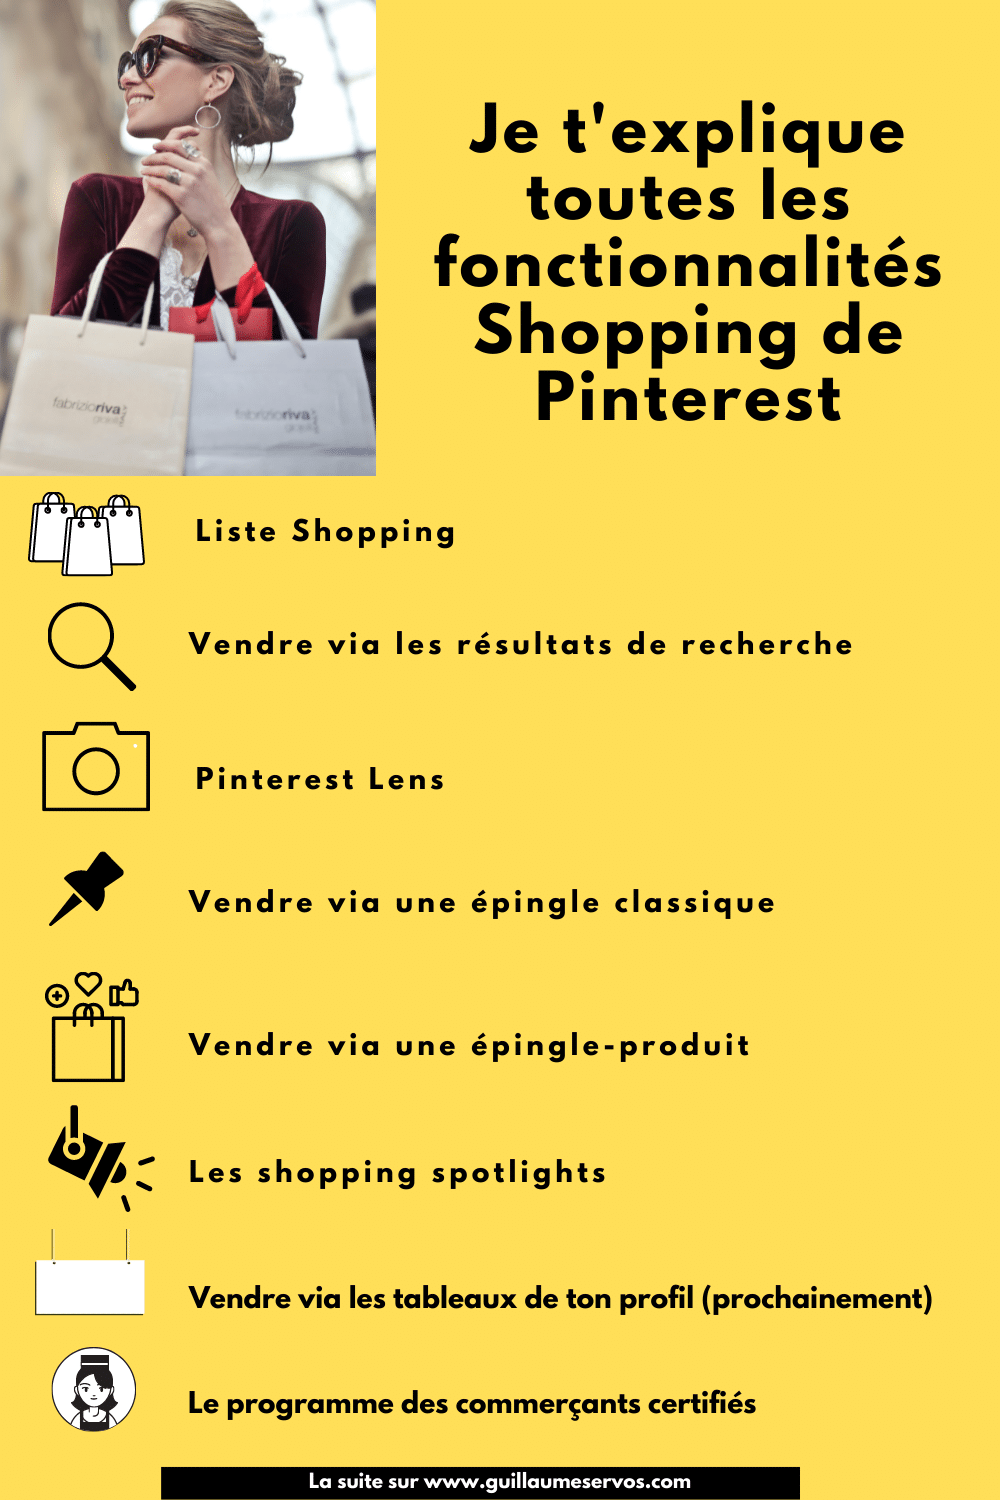 Infographie les fonctionnalités Shopping de Pinterest expliquées